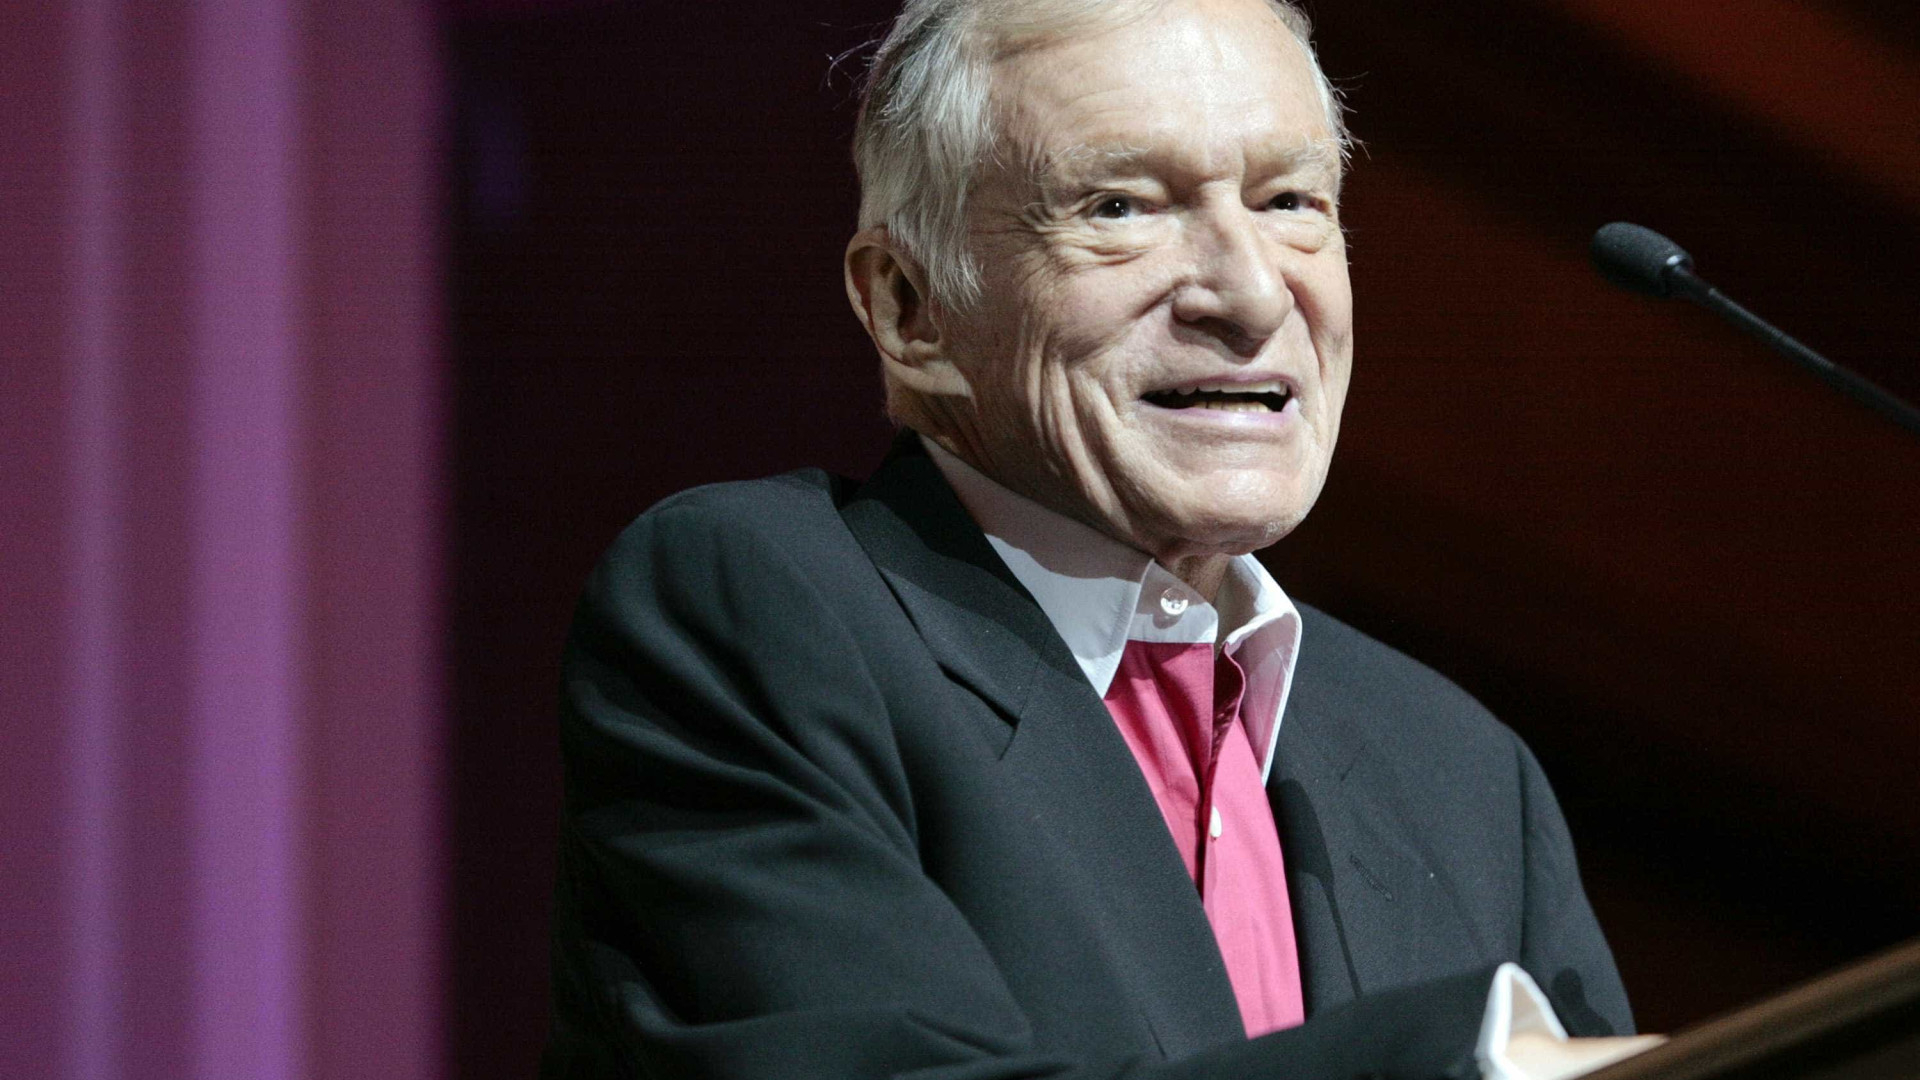 Morre criador da Playboy, aos 91 anos